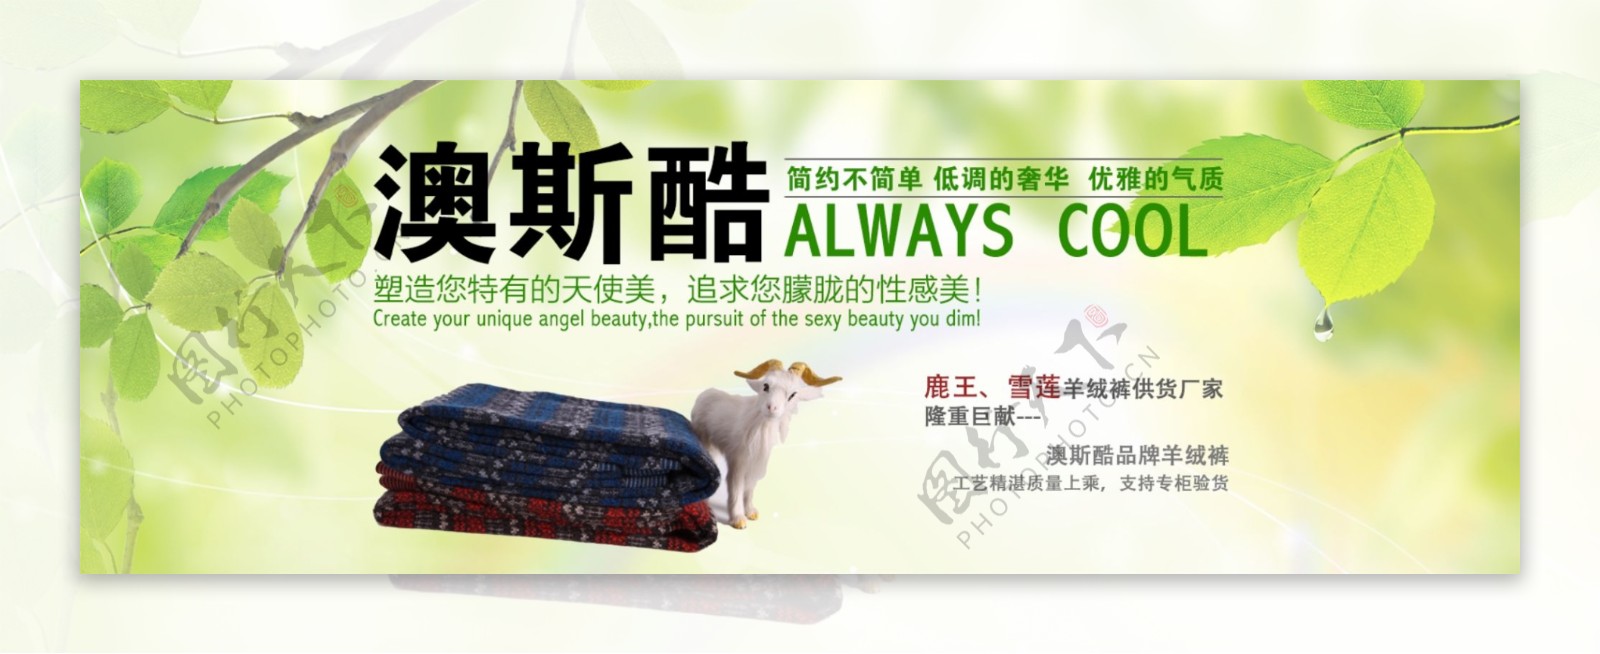 淘宝天猫羊毛衫促销海报设计PSD素材